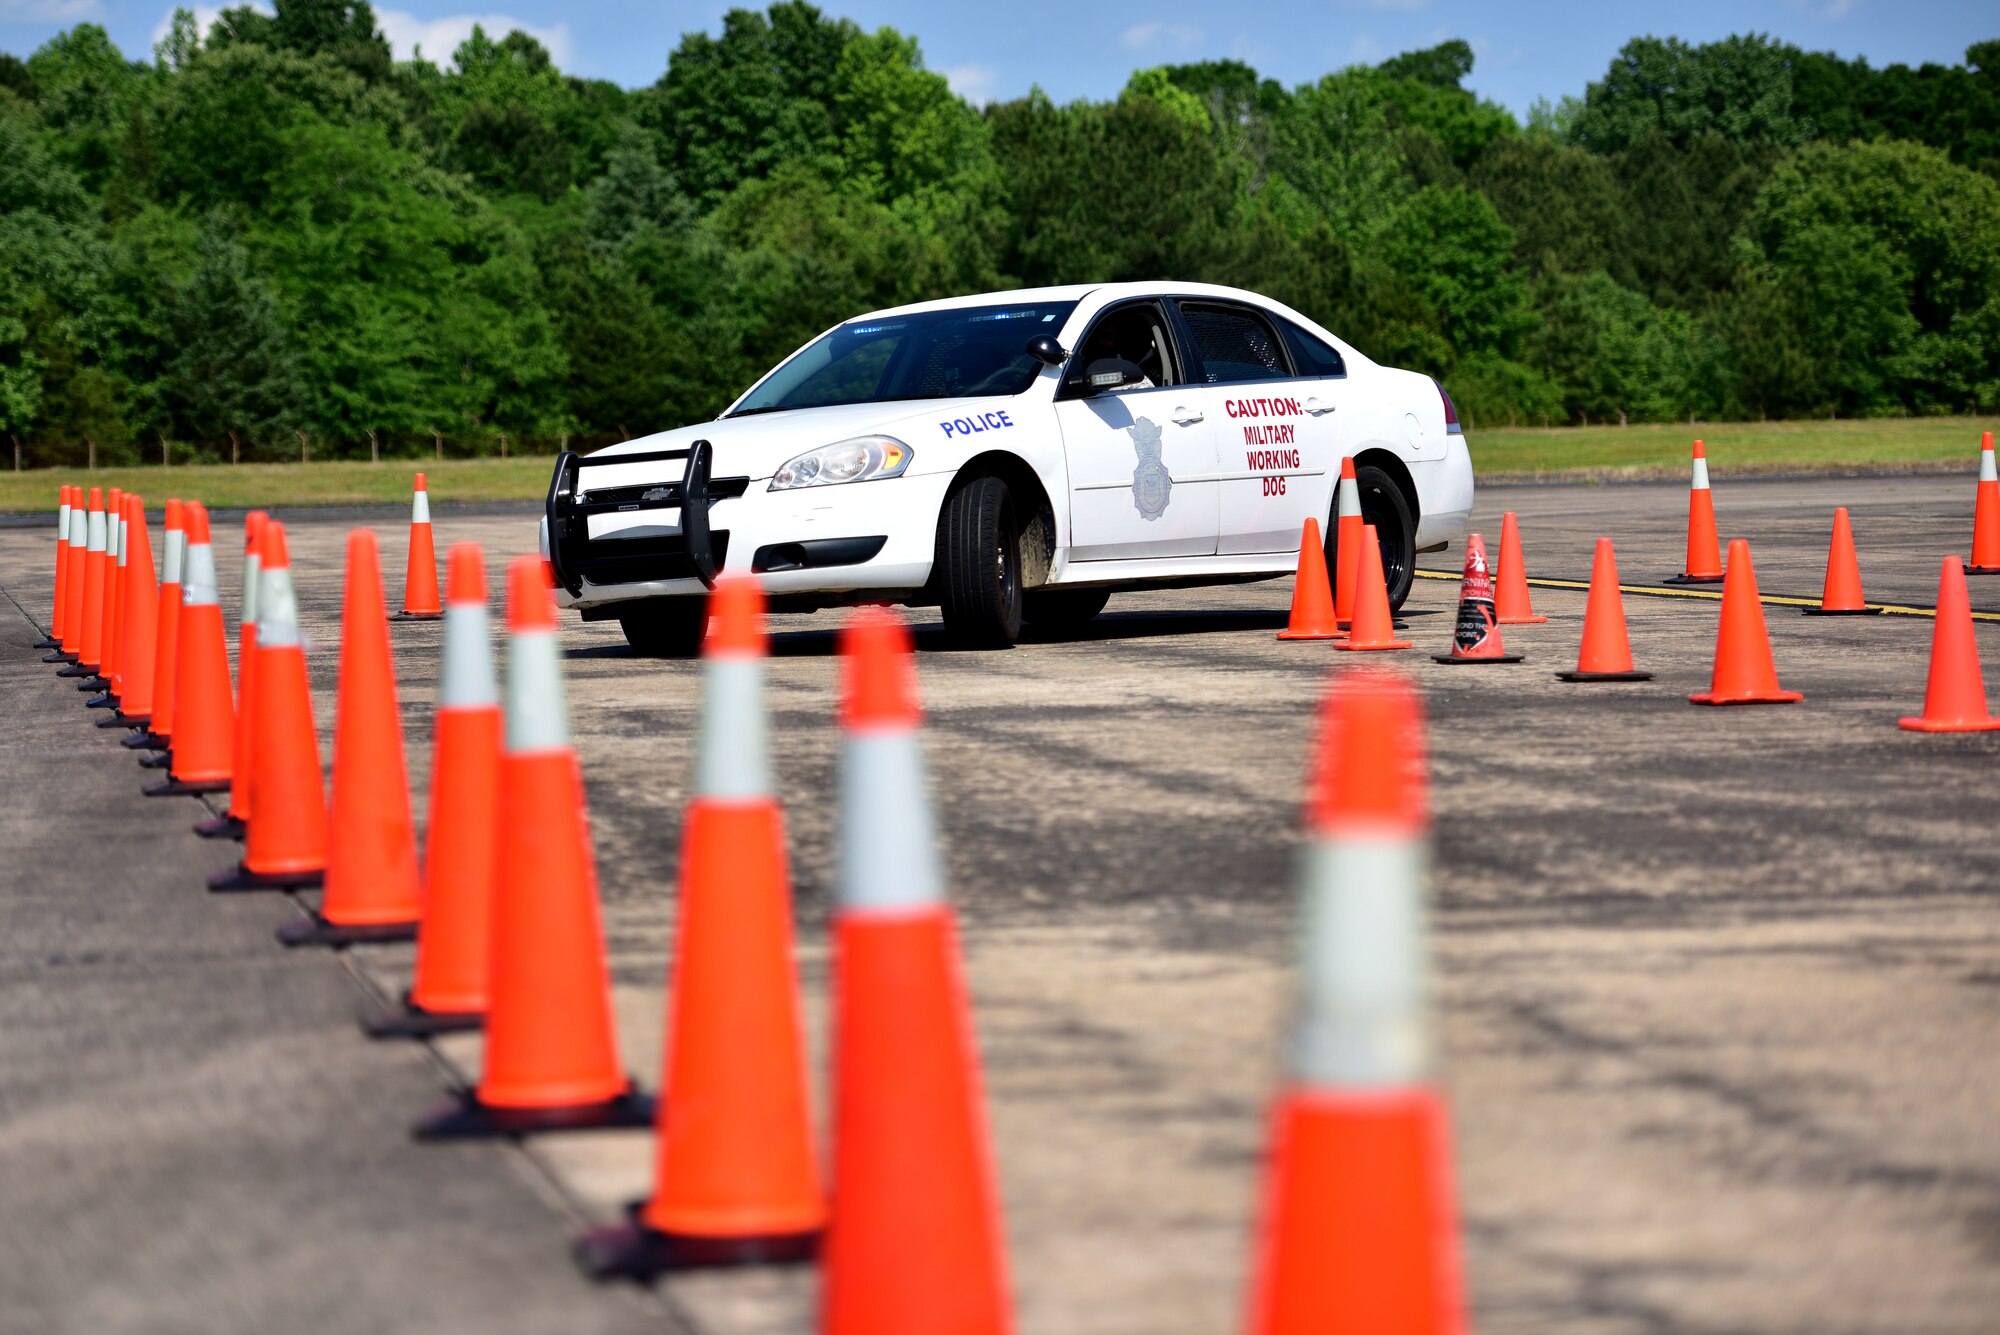 A police car drives through cones.